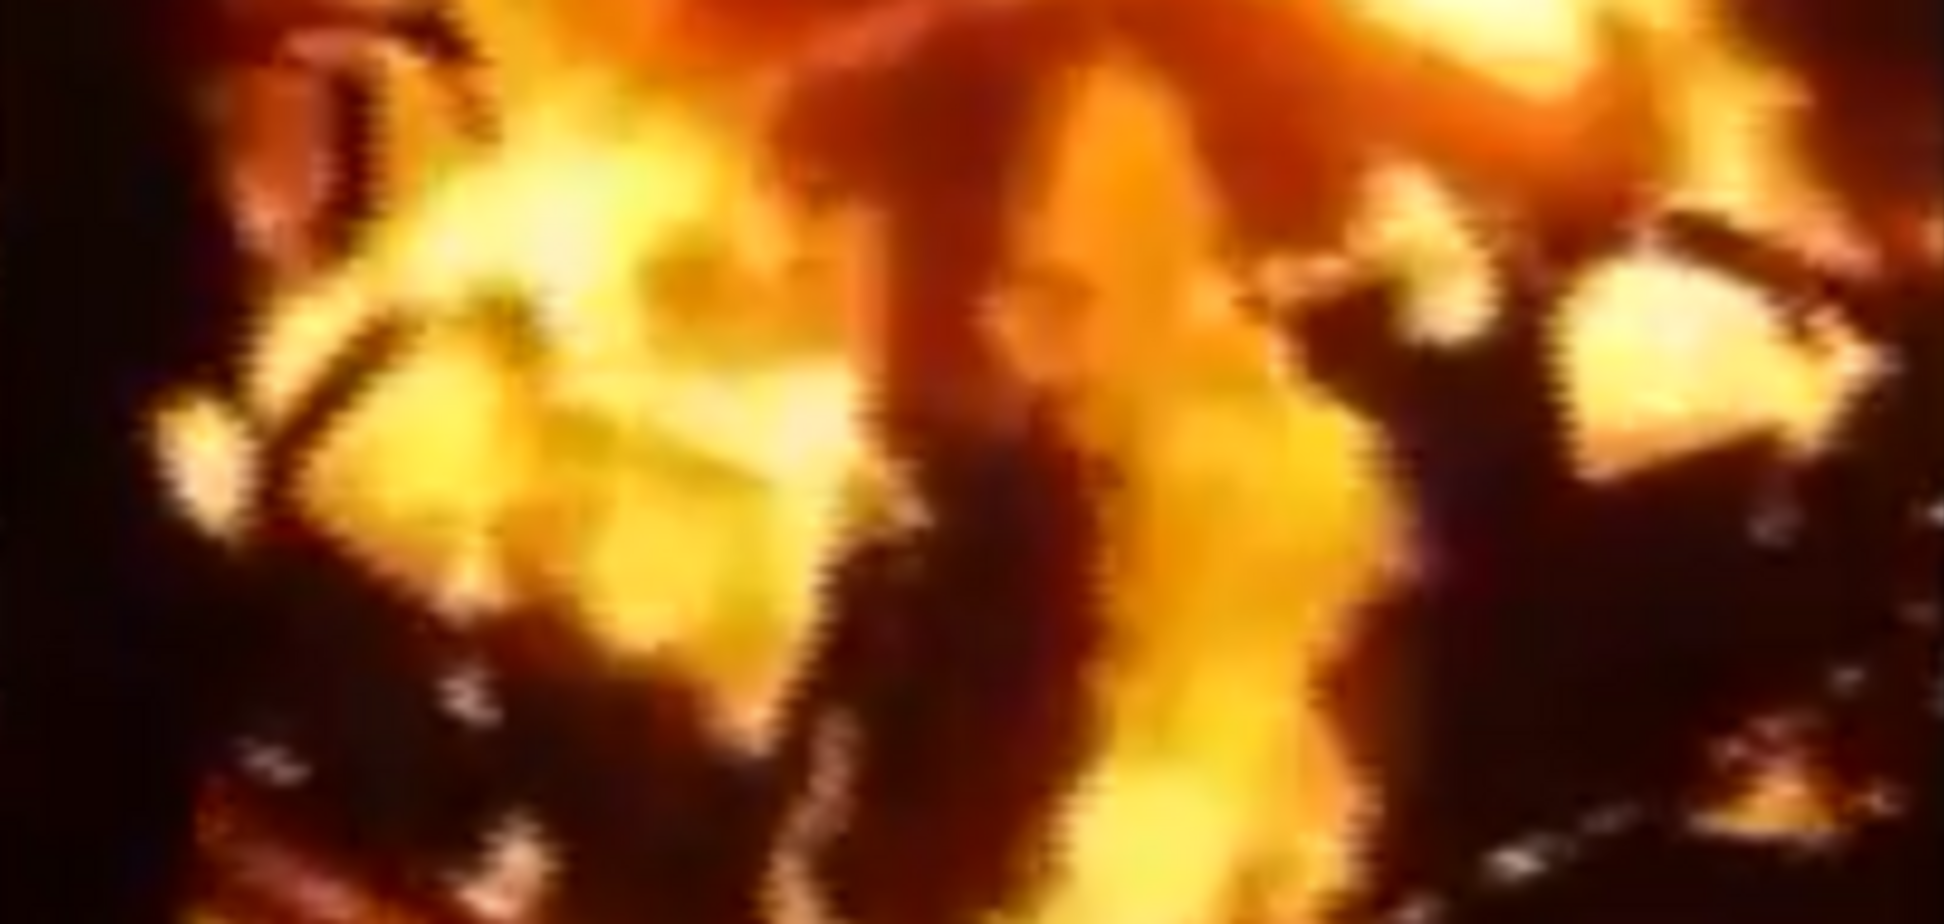 СМИ: в Ужгороде сожгли дотла машину прокурора, опубликовано видео